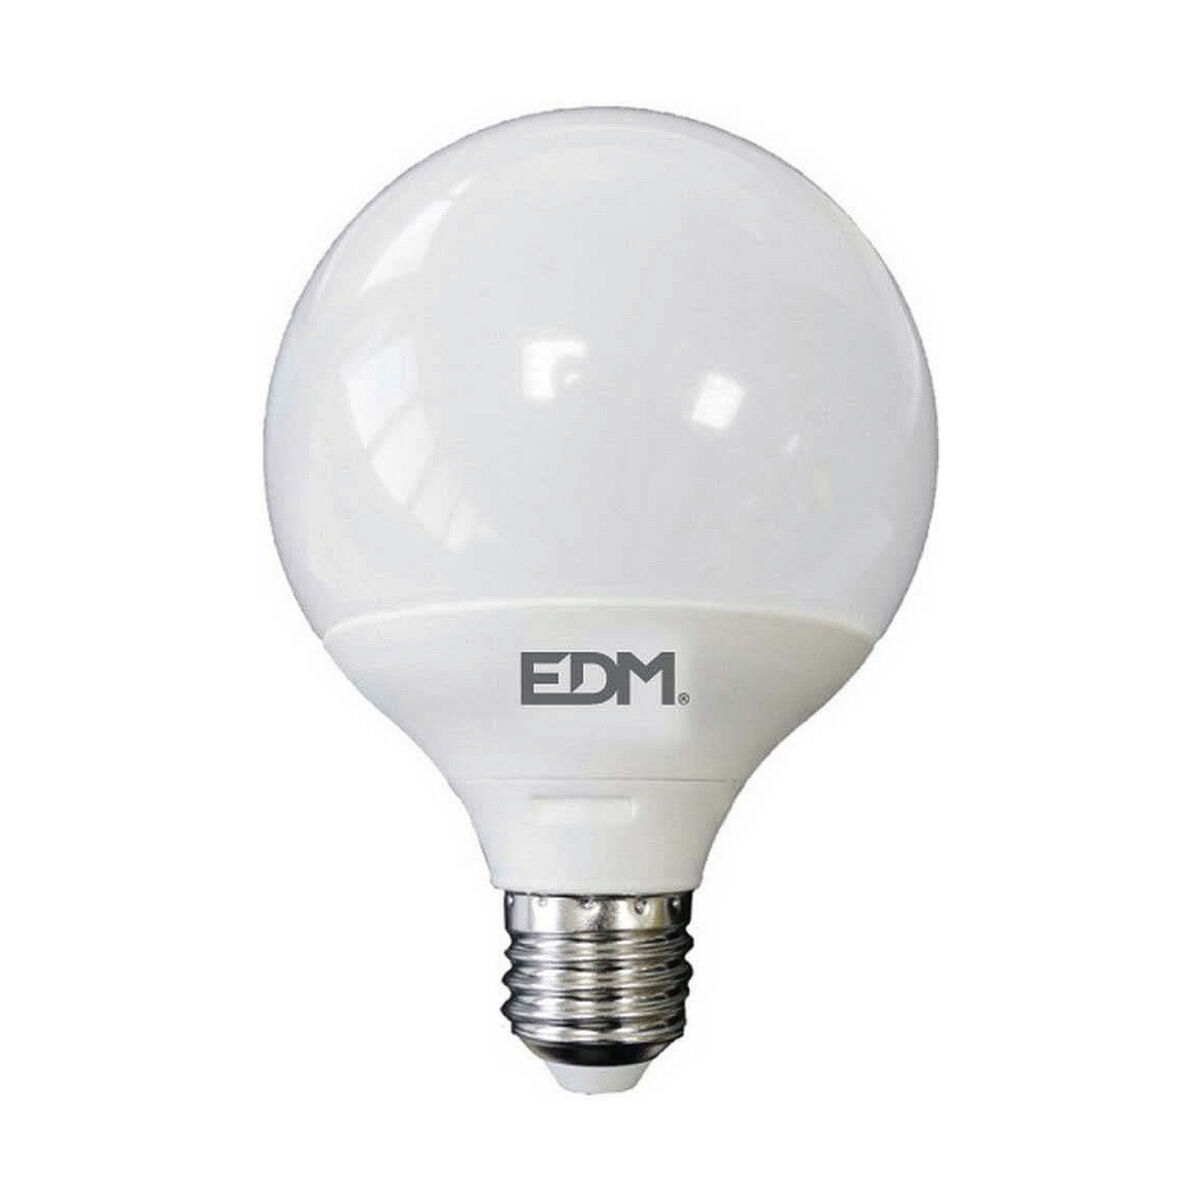 Lampe LED EDM E27 A+ 15 W 1521 Lm (3200 K)